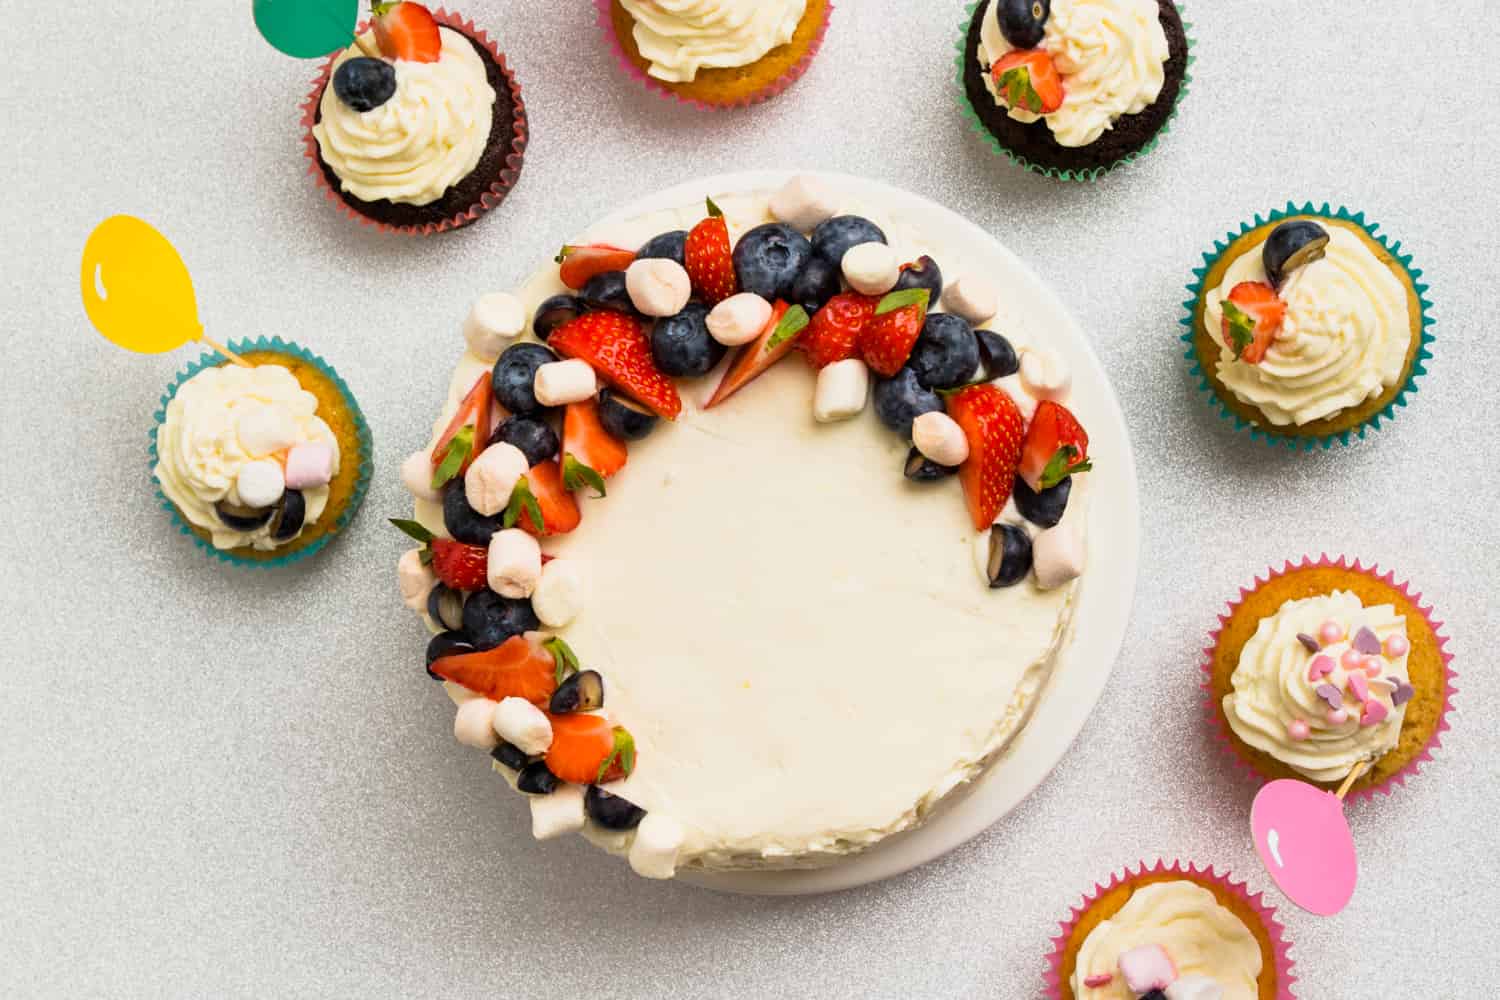 Mejores toppins para tarta mostrados conjuntamente en un pastel de crema